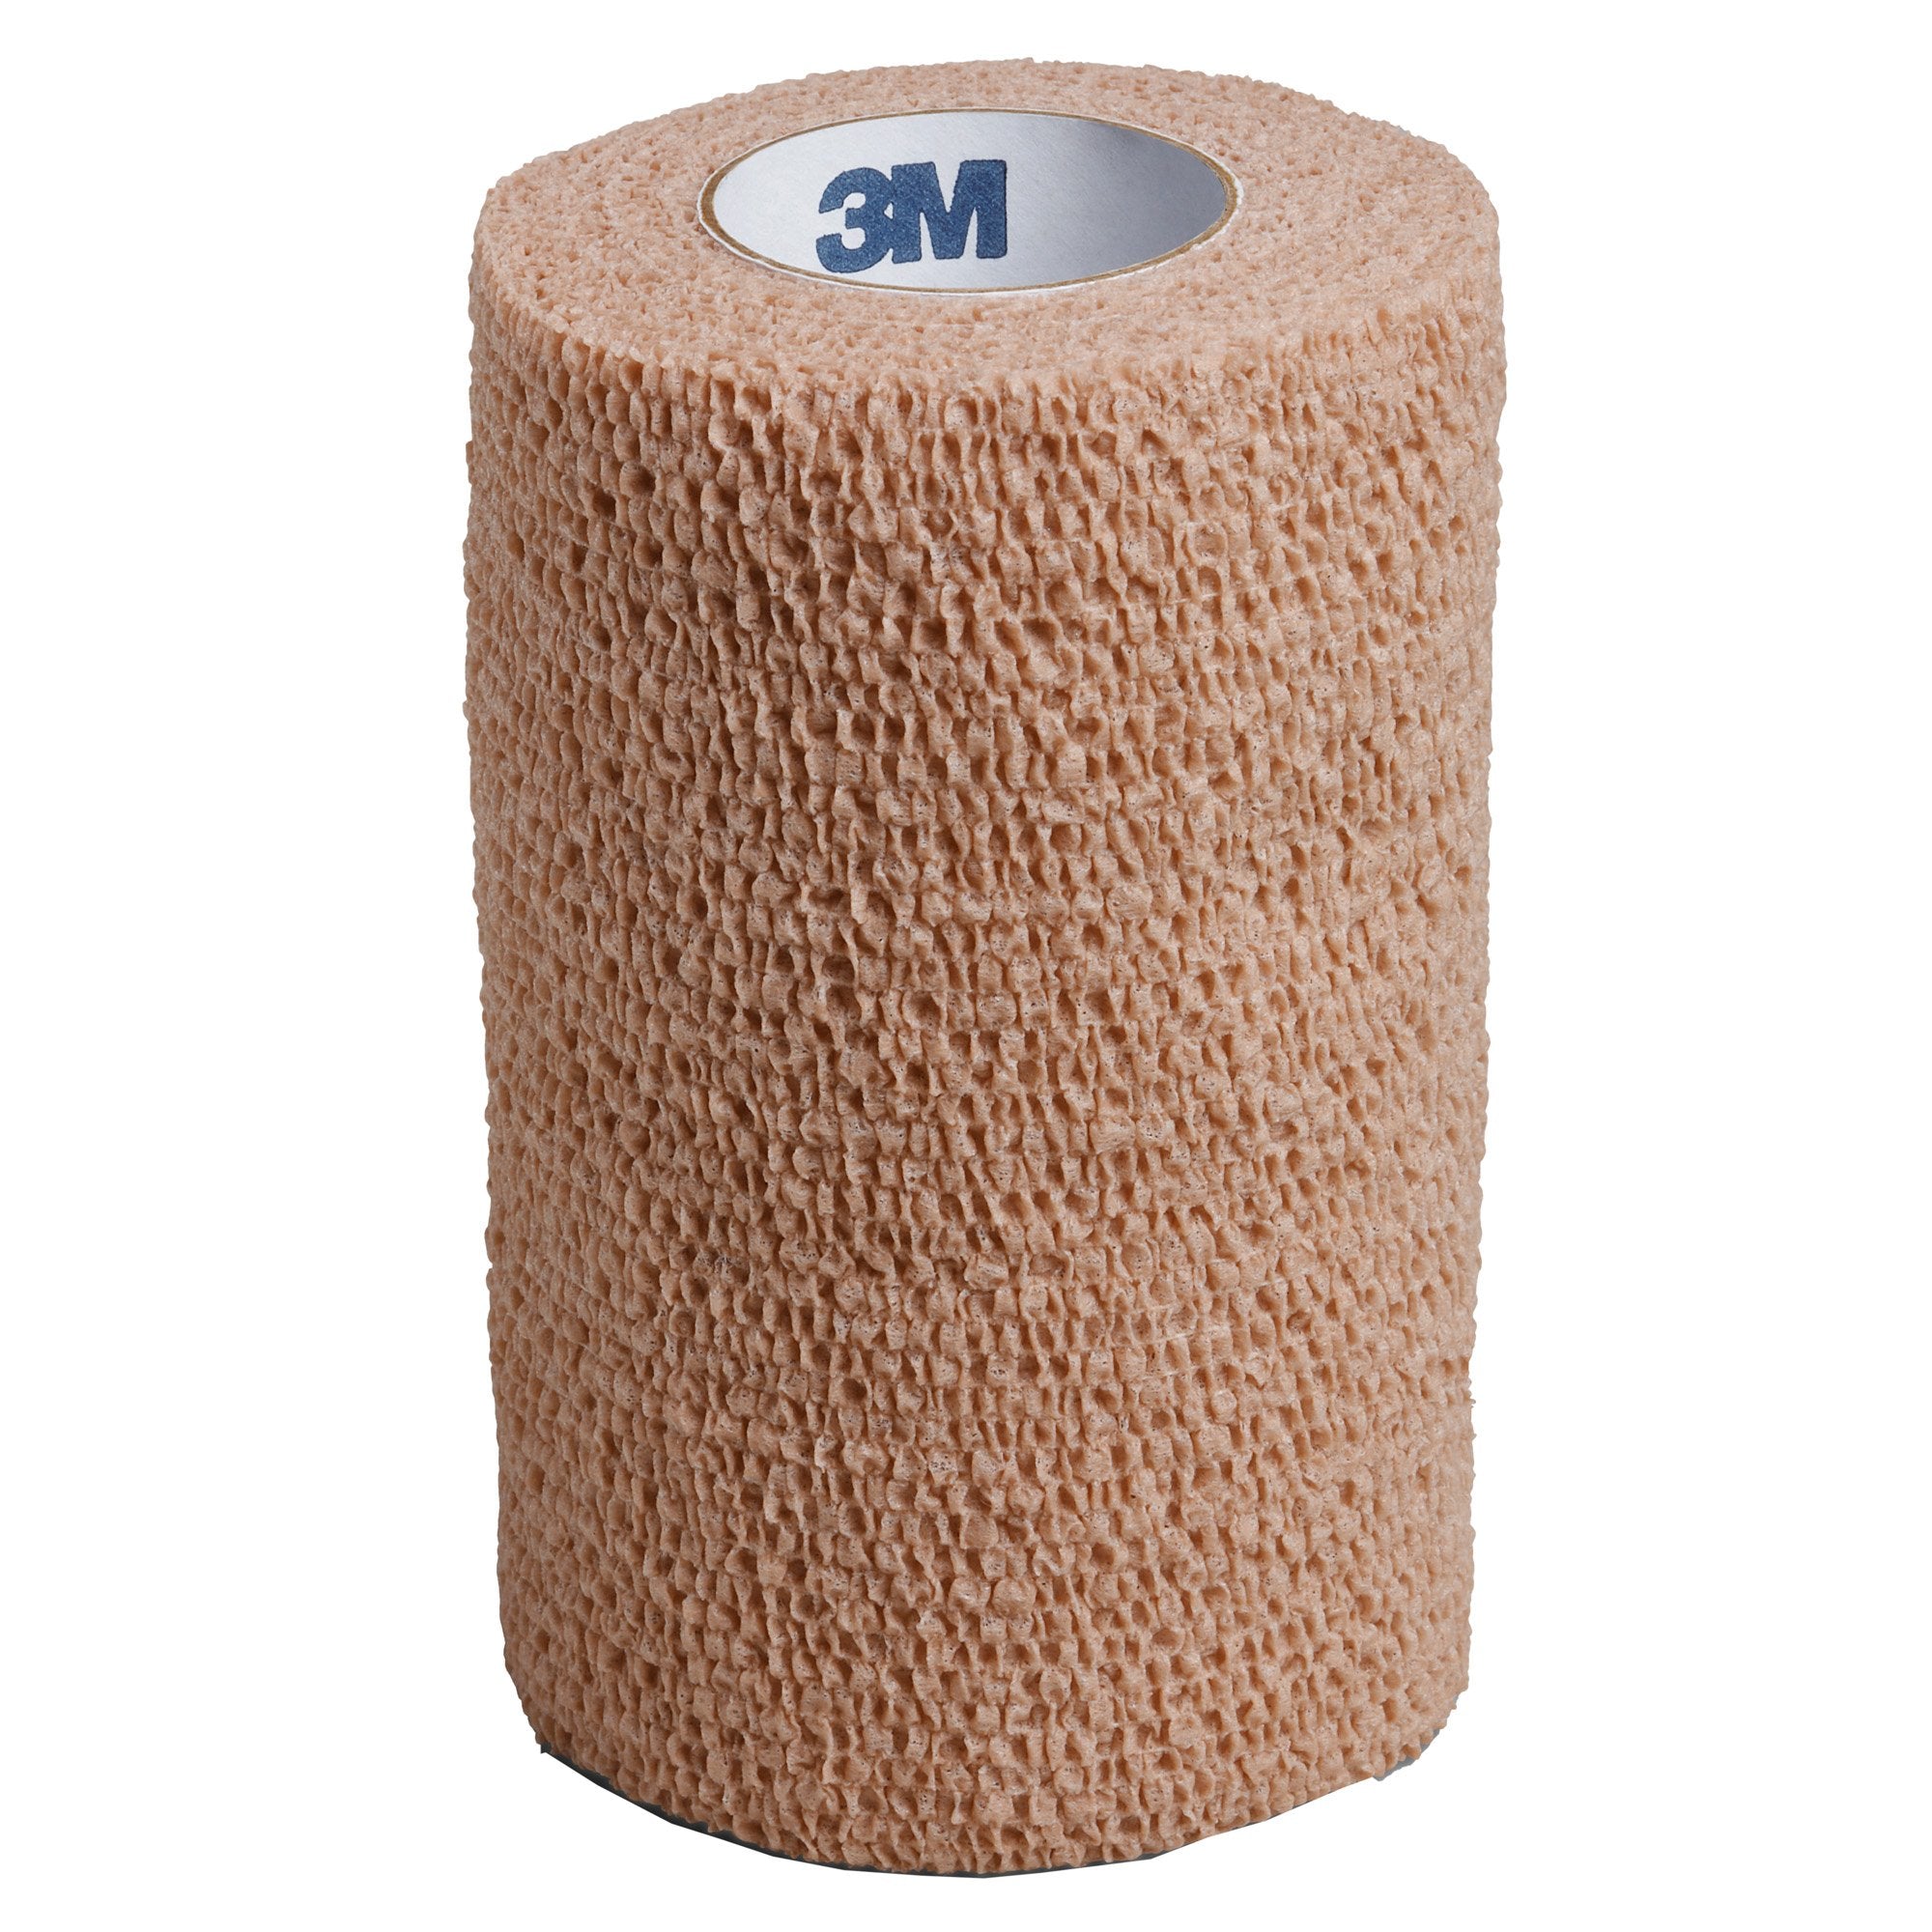 3M™ Coban™ Standard Compression Bandage 4 Inch x 5 Yard Roll